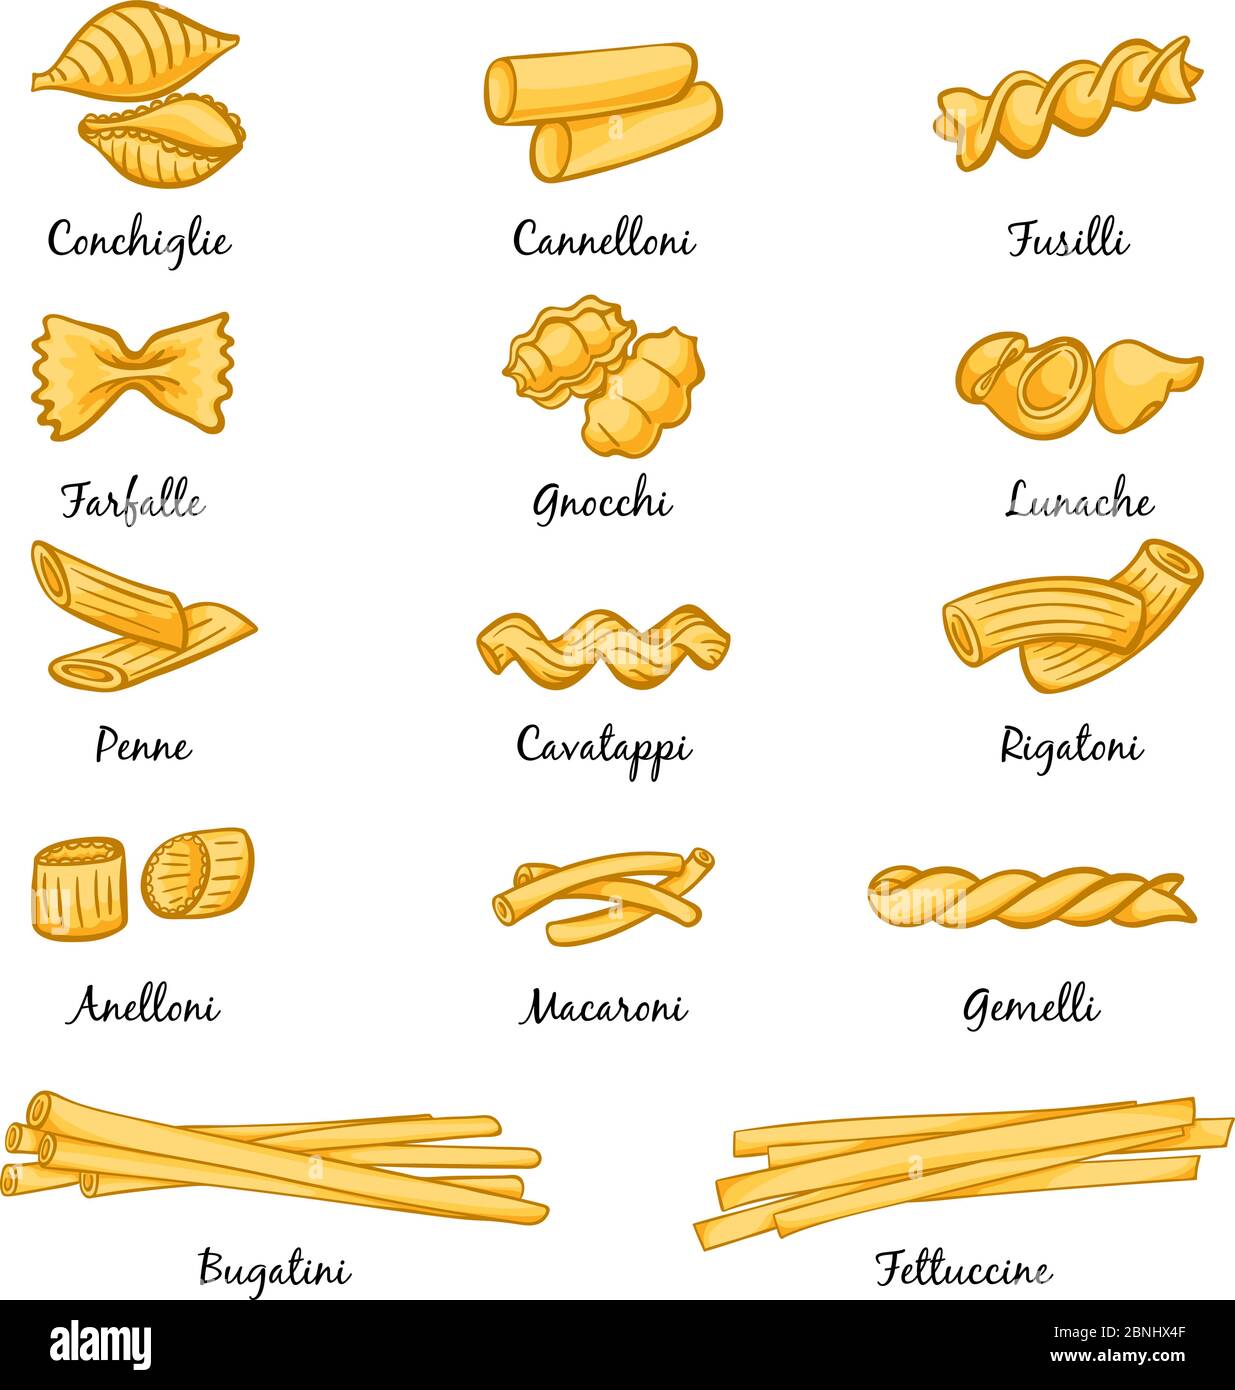 Macaroni art Banque d'images vectorielles - Page 3 - Alamy